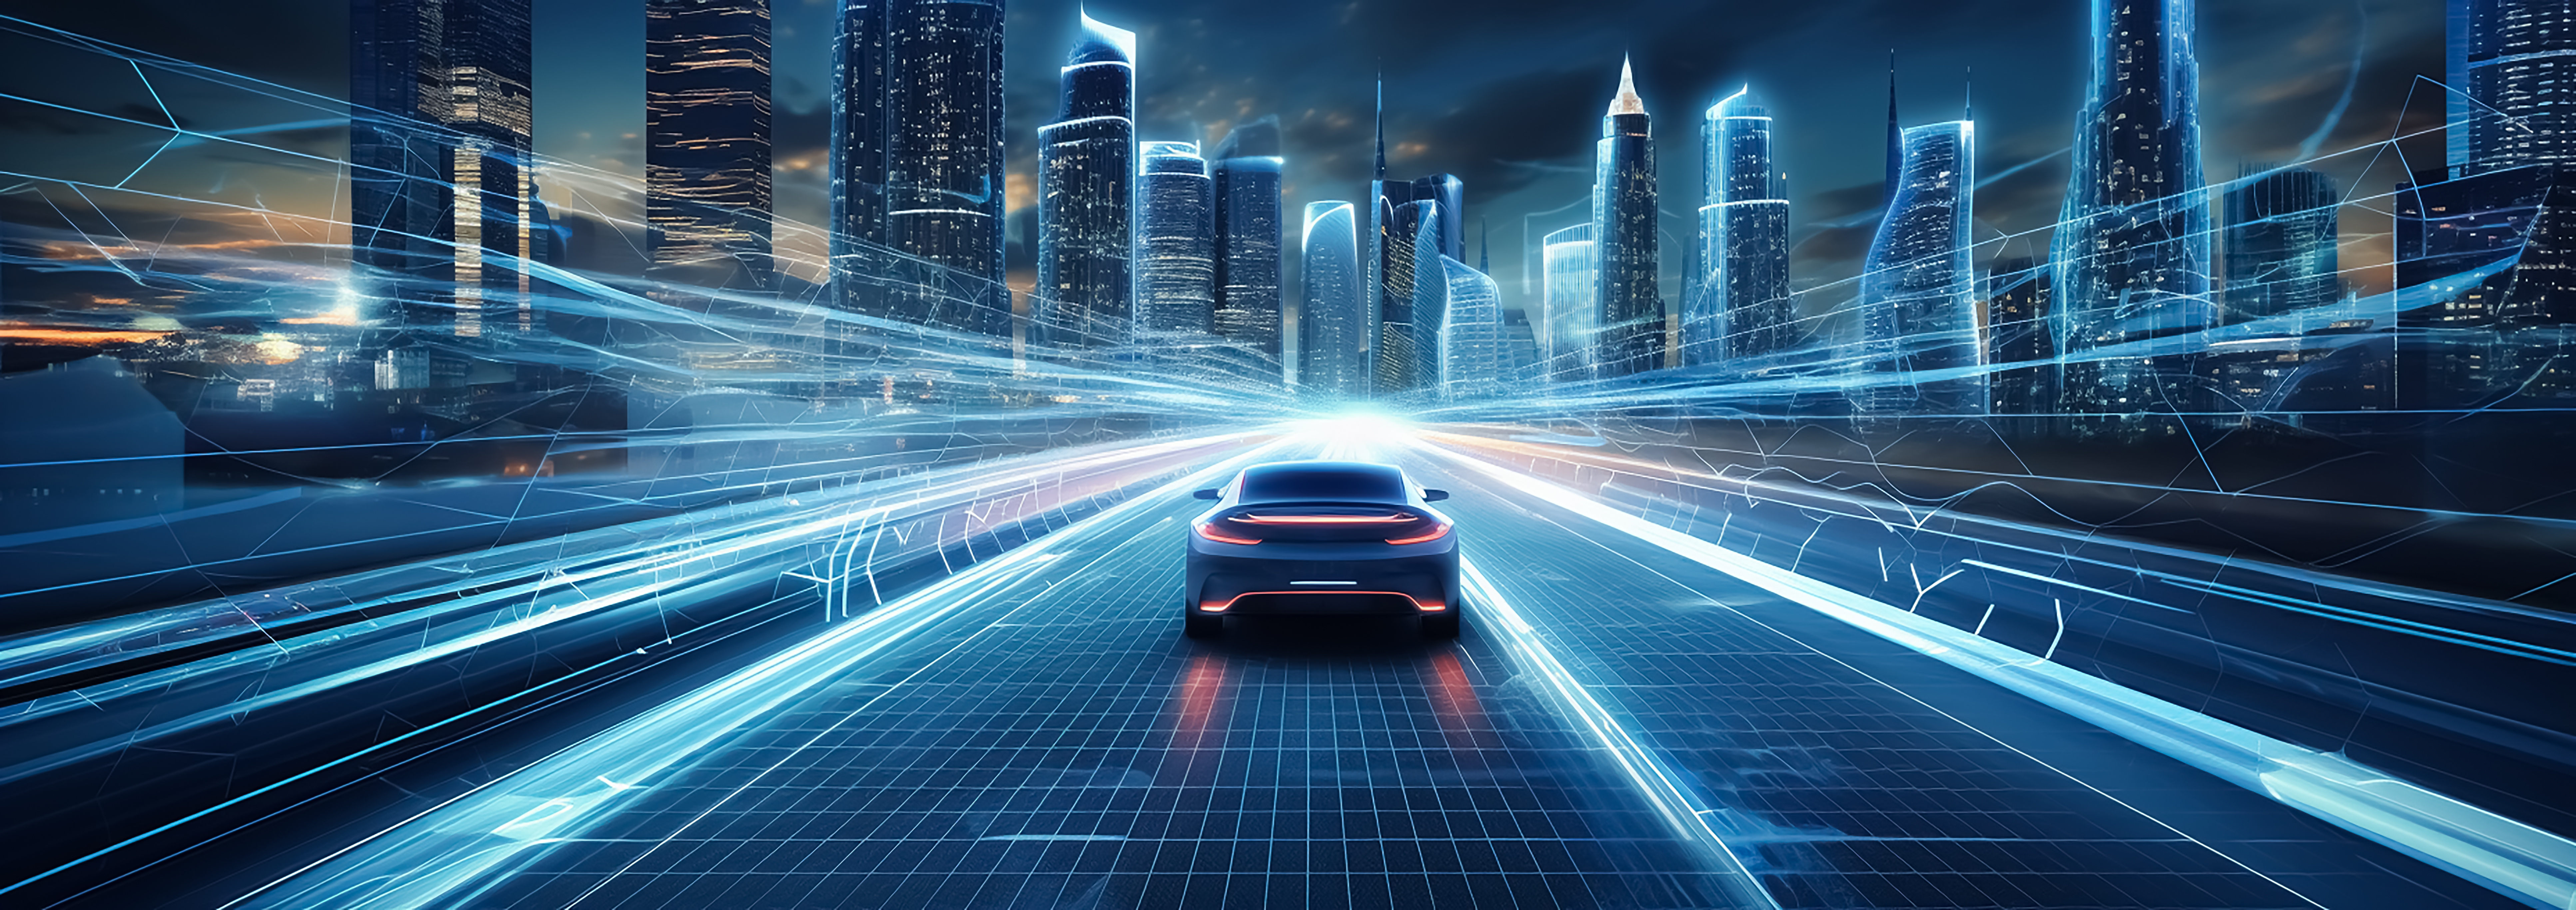 Dekoratives Bild, autonomes Auto mit Berührungssensoren in einer futuristischen Umgebung